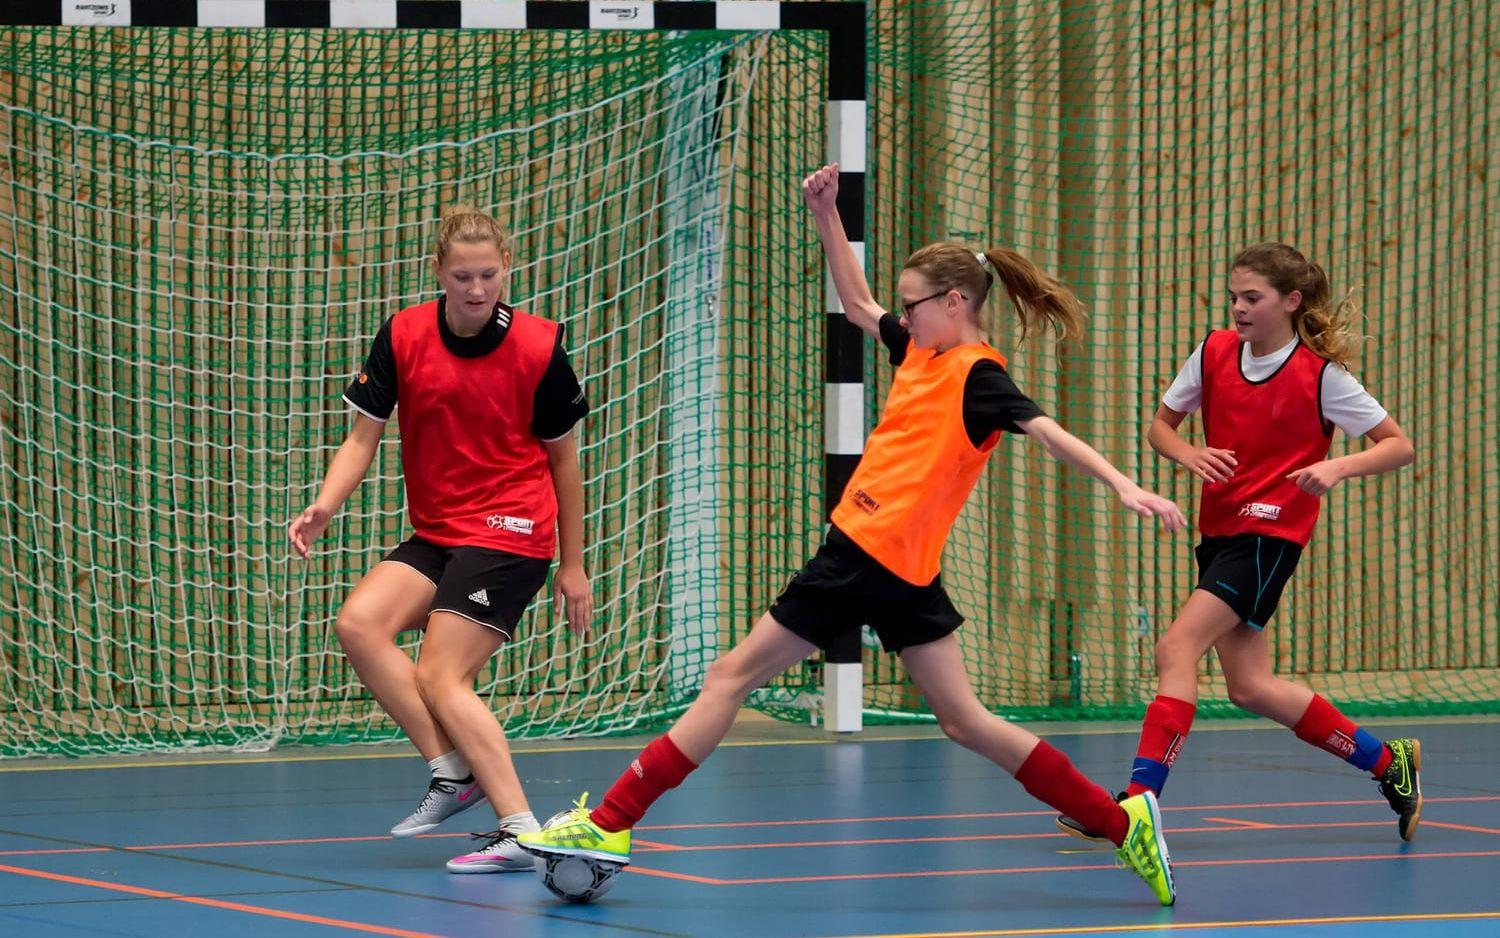 Träningsspel. Evelina Bengtsson (praktikant) är målvakt i röda laget och försöker stoppa Celine Östman från att göra mål. Livia Holm kommer rusande för att hjälpa till med försvaret